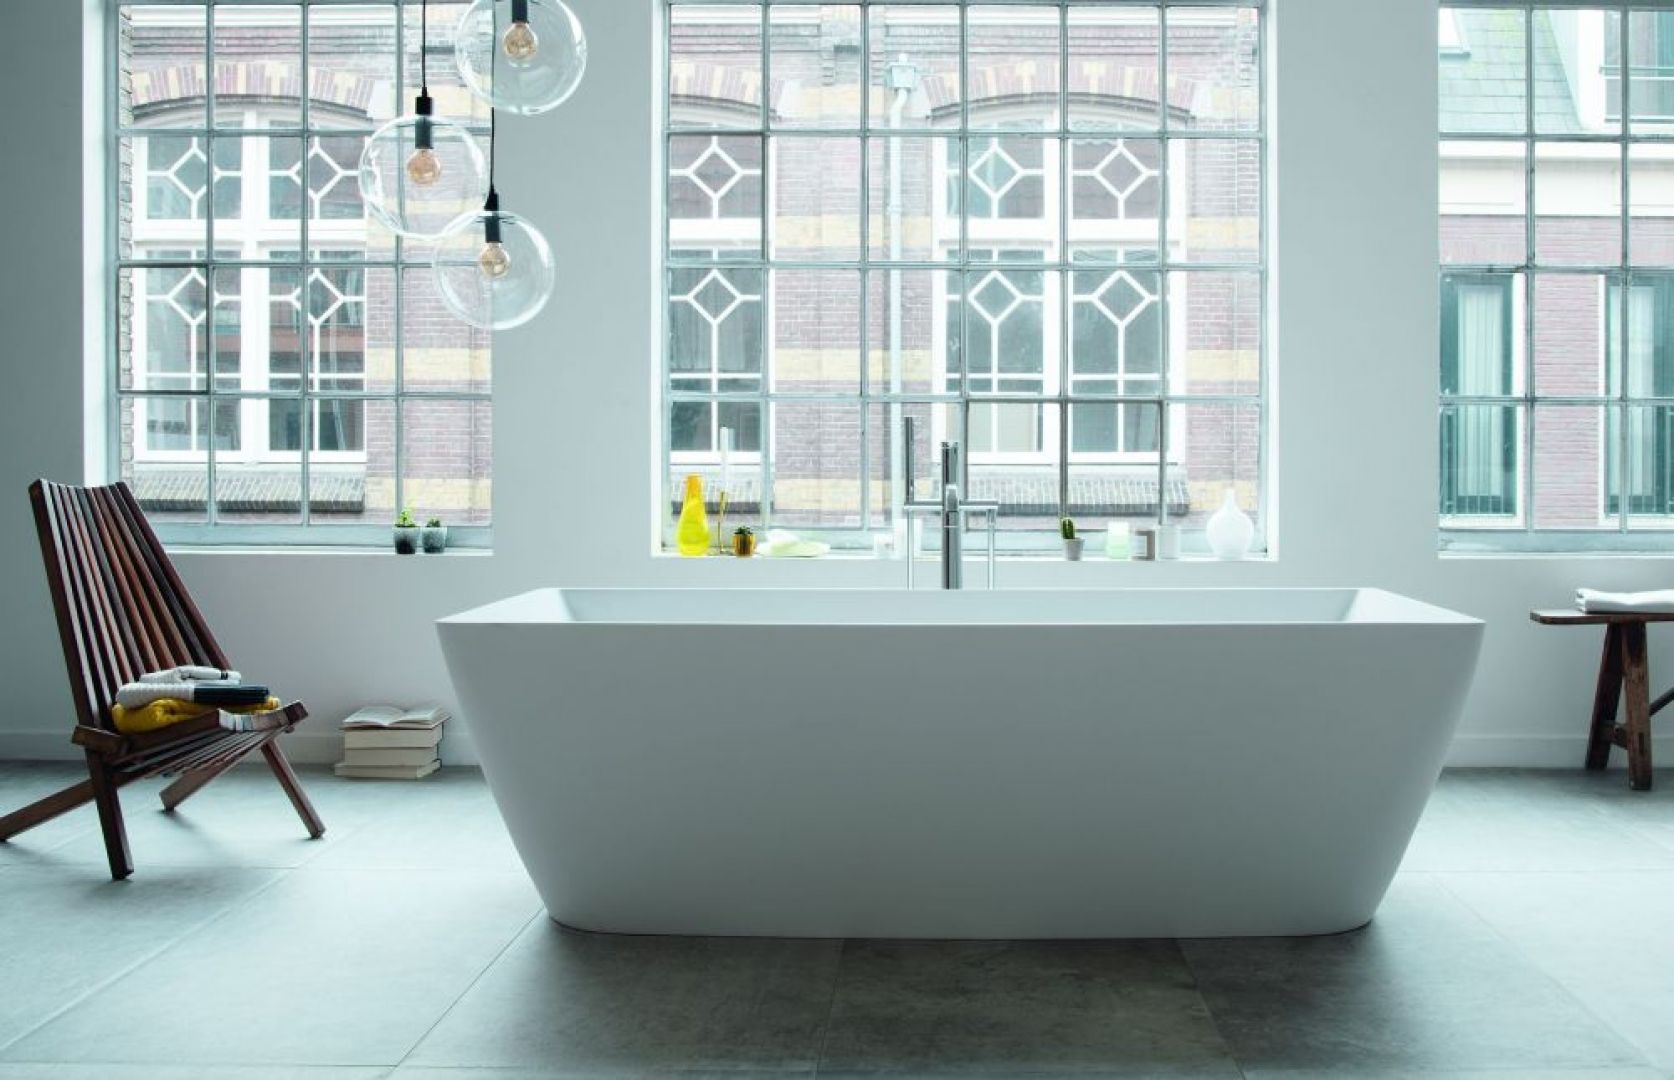 Serie łazienkowe Duravit zachwycające perfekcyjnym połączeniem materiału i formy oferują znacznie więcej niż ciekawe, dopracowane w każdym szczególe wzornictwo. Fot. Duravit